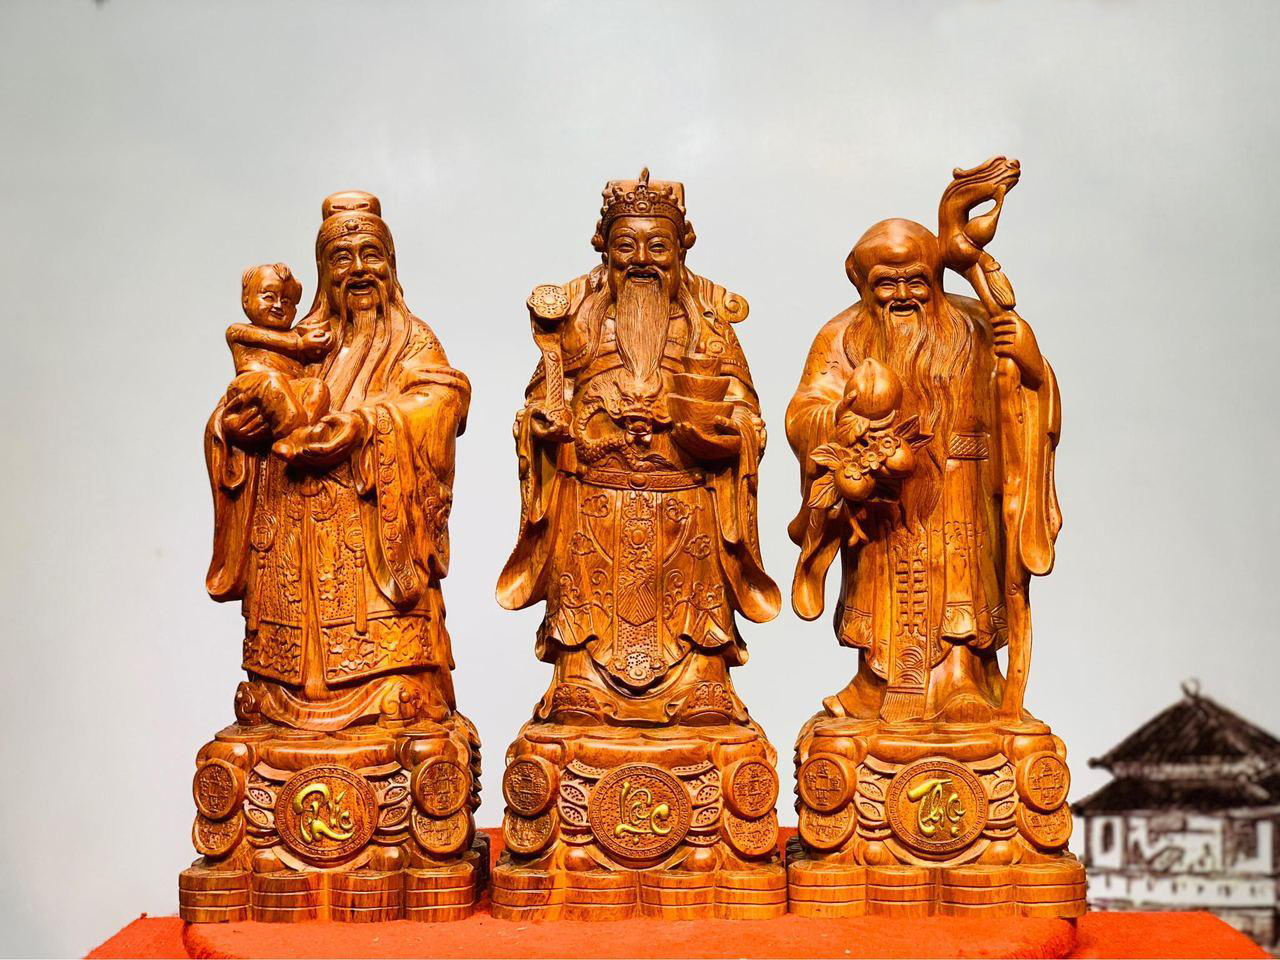 Quyền lợi tiêu dùng - Tượng gỗ Nguyễn Hồng – Lưu ý khi chơi tượng gỗ phong thủy để gia chủ làm ăn phát tài (Hình 4).